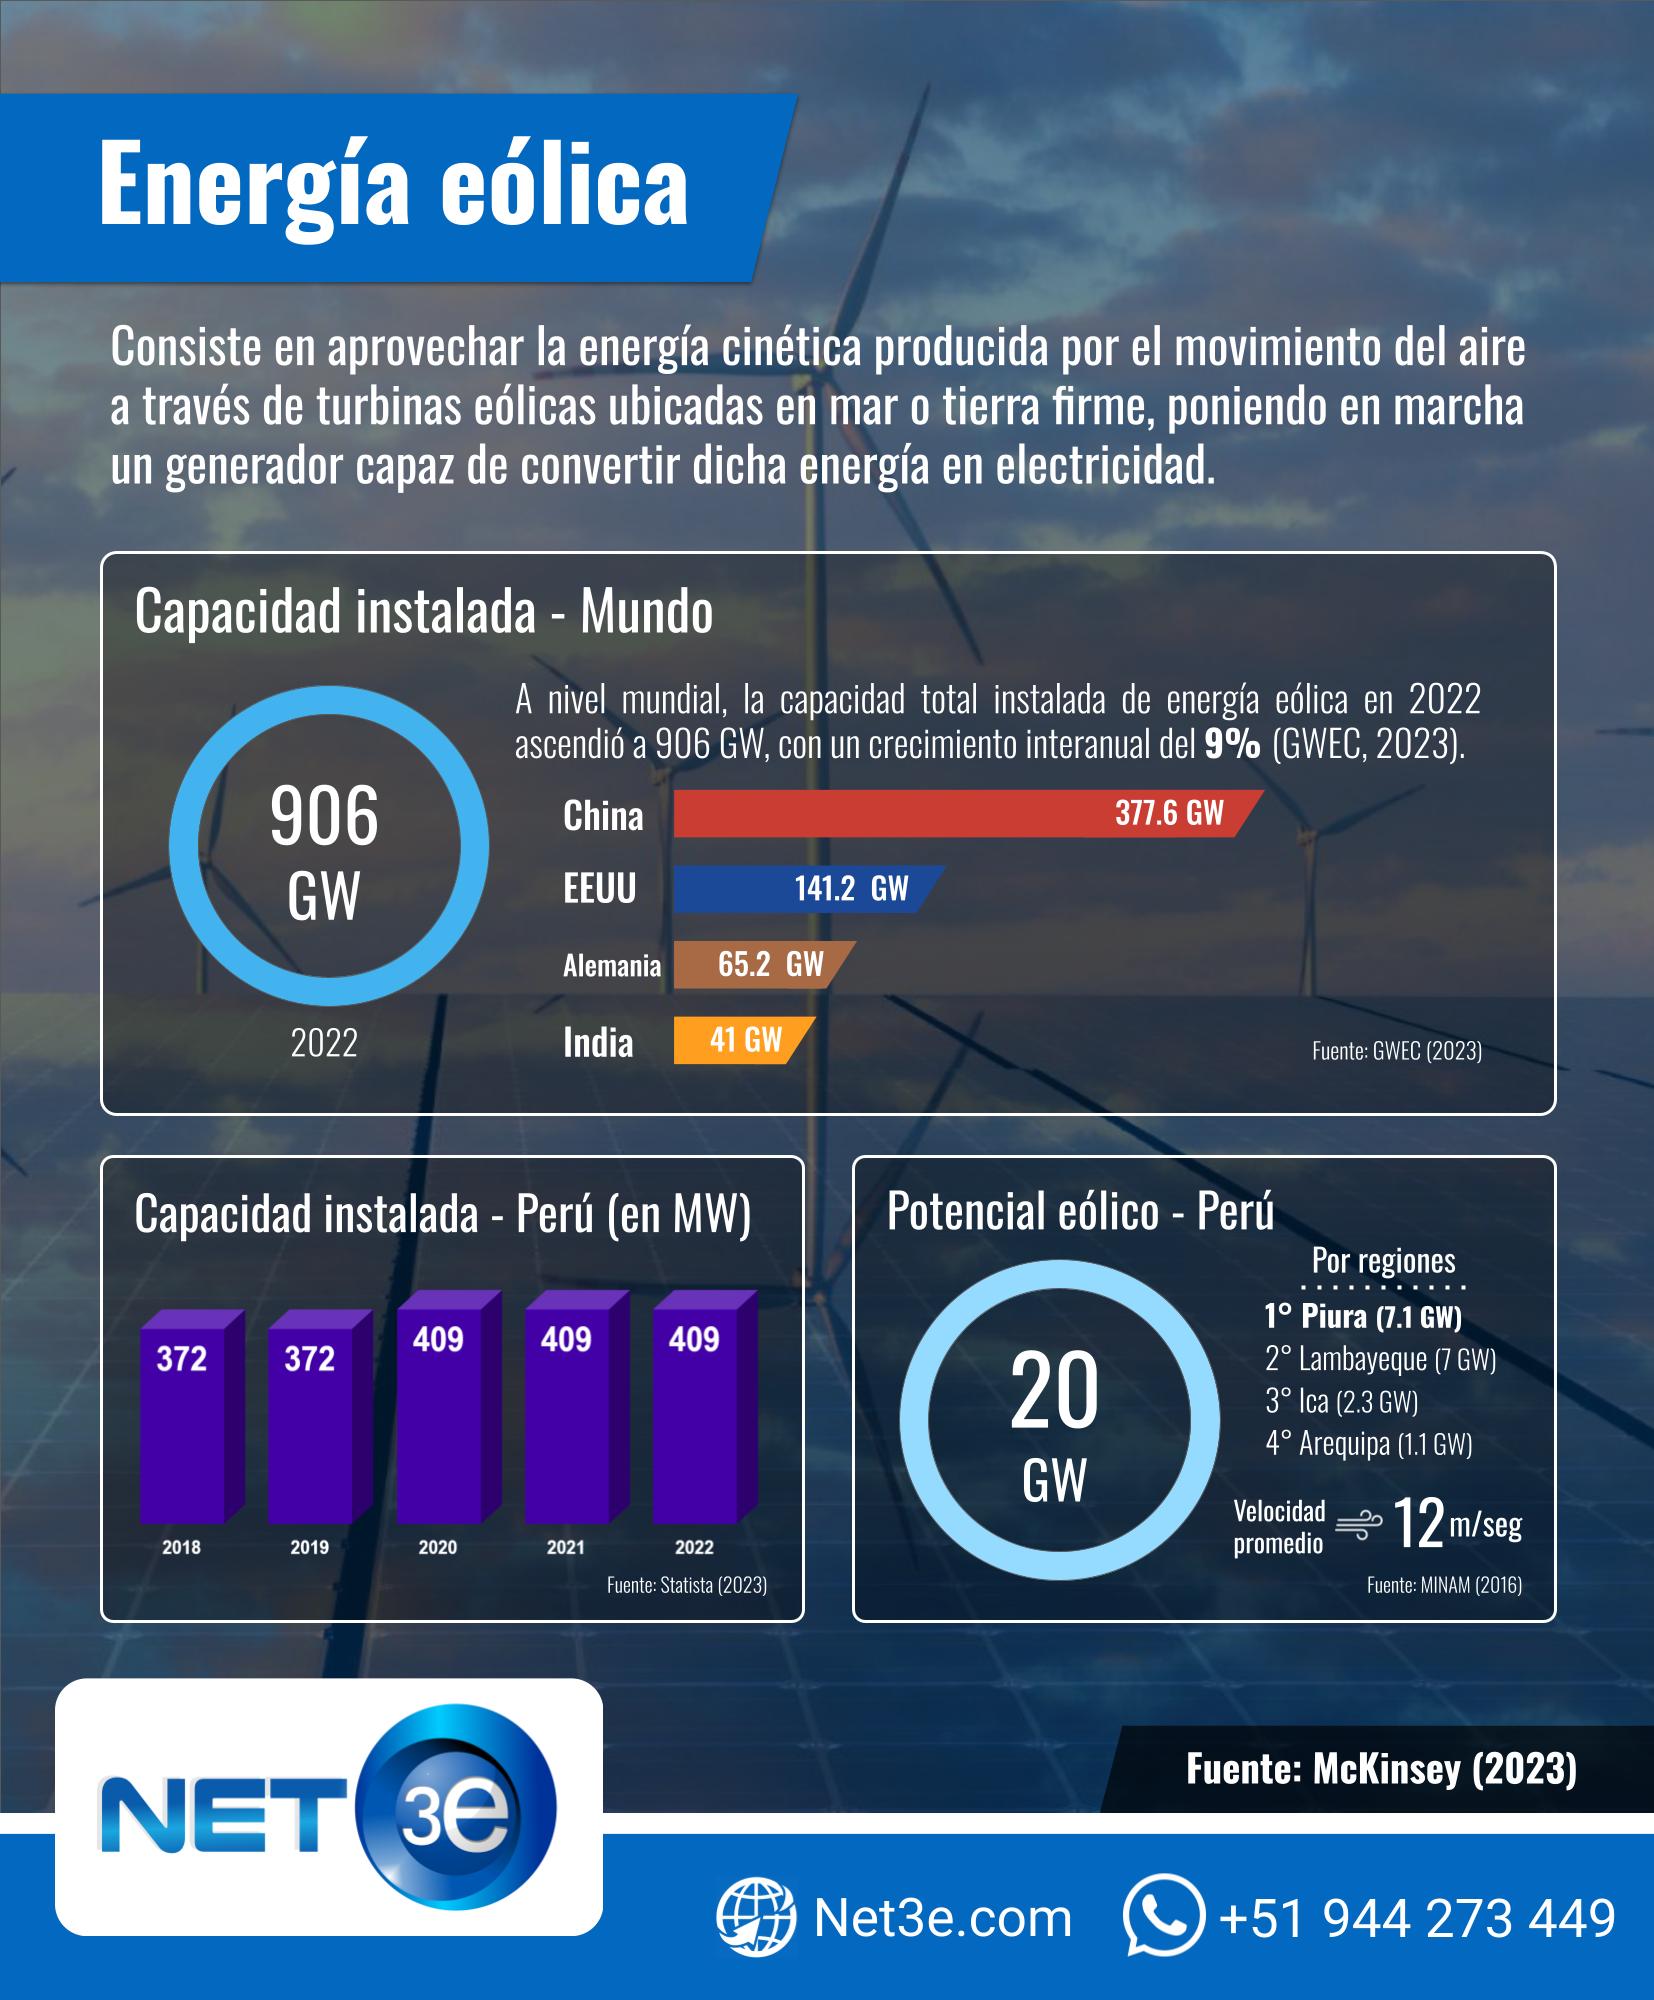 ENERGIA RENOVABLEFORMATO DIAGNÓSTICO EN PPTREPORTE Y CENET3E 1654X2000 6